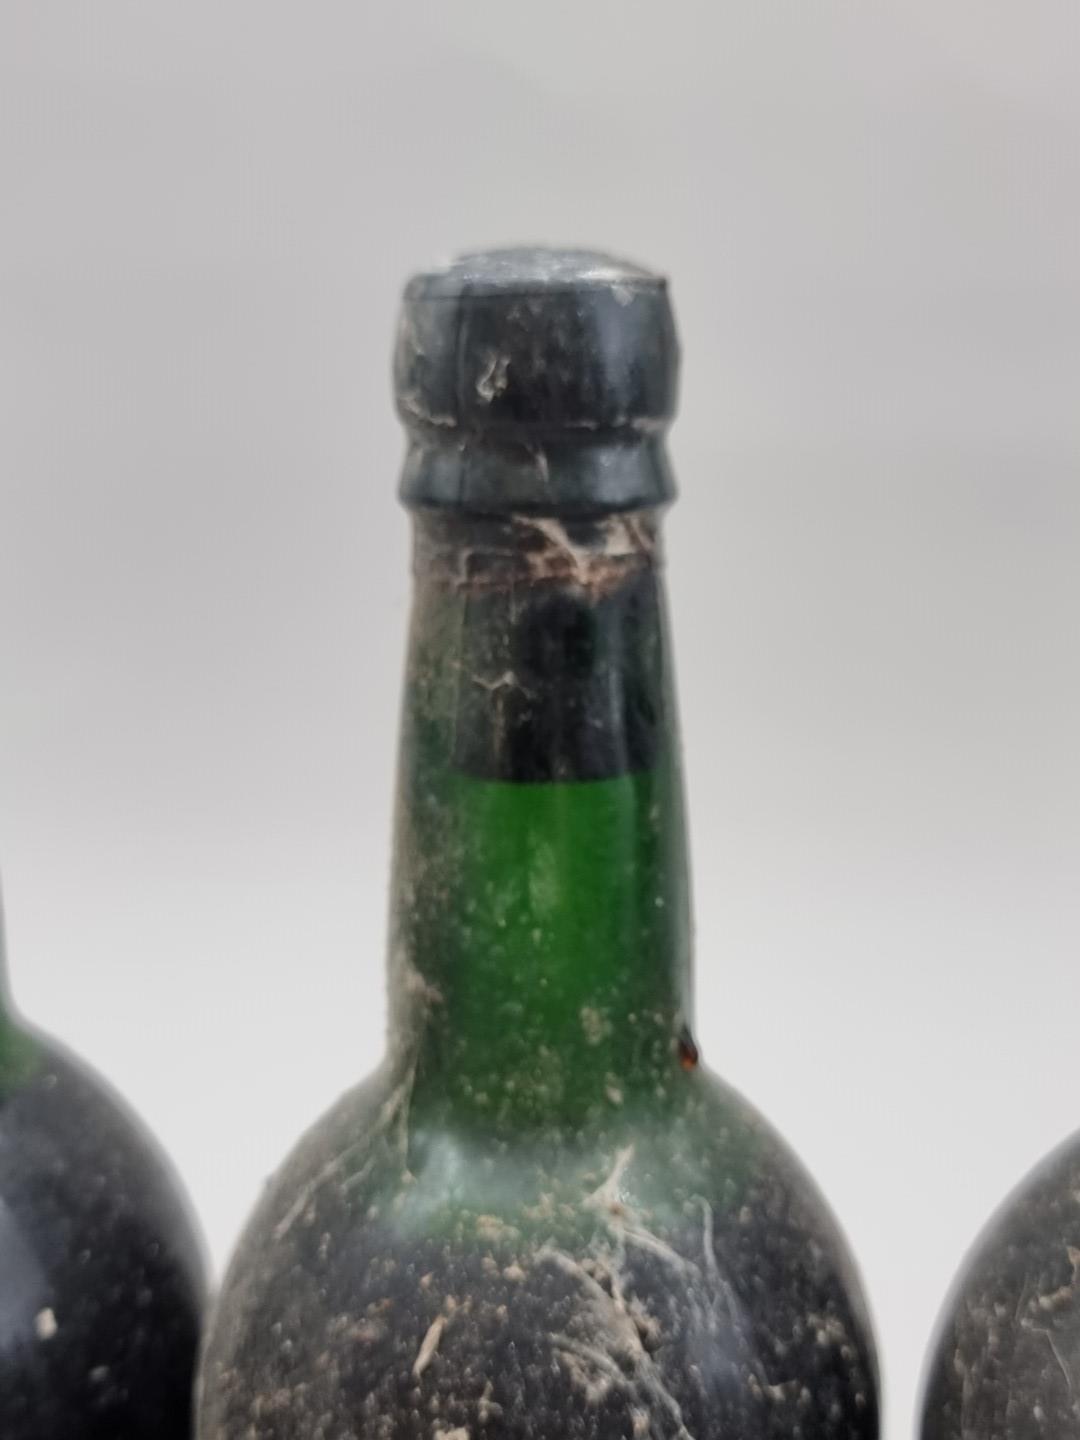 Six bottles of Taylor's 1966 Vintage Port, (no labels). (6) - Image 4 of 4